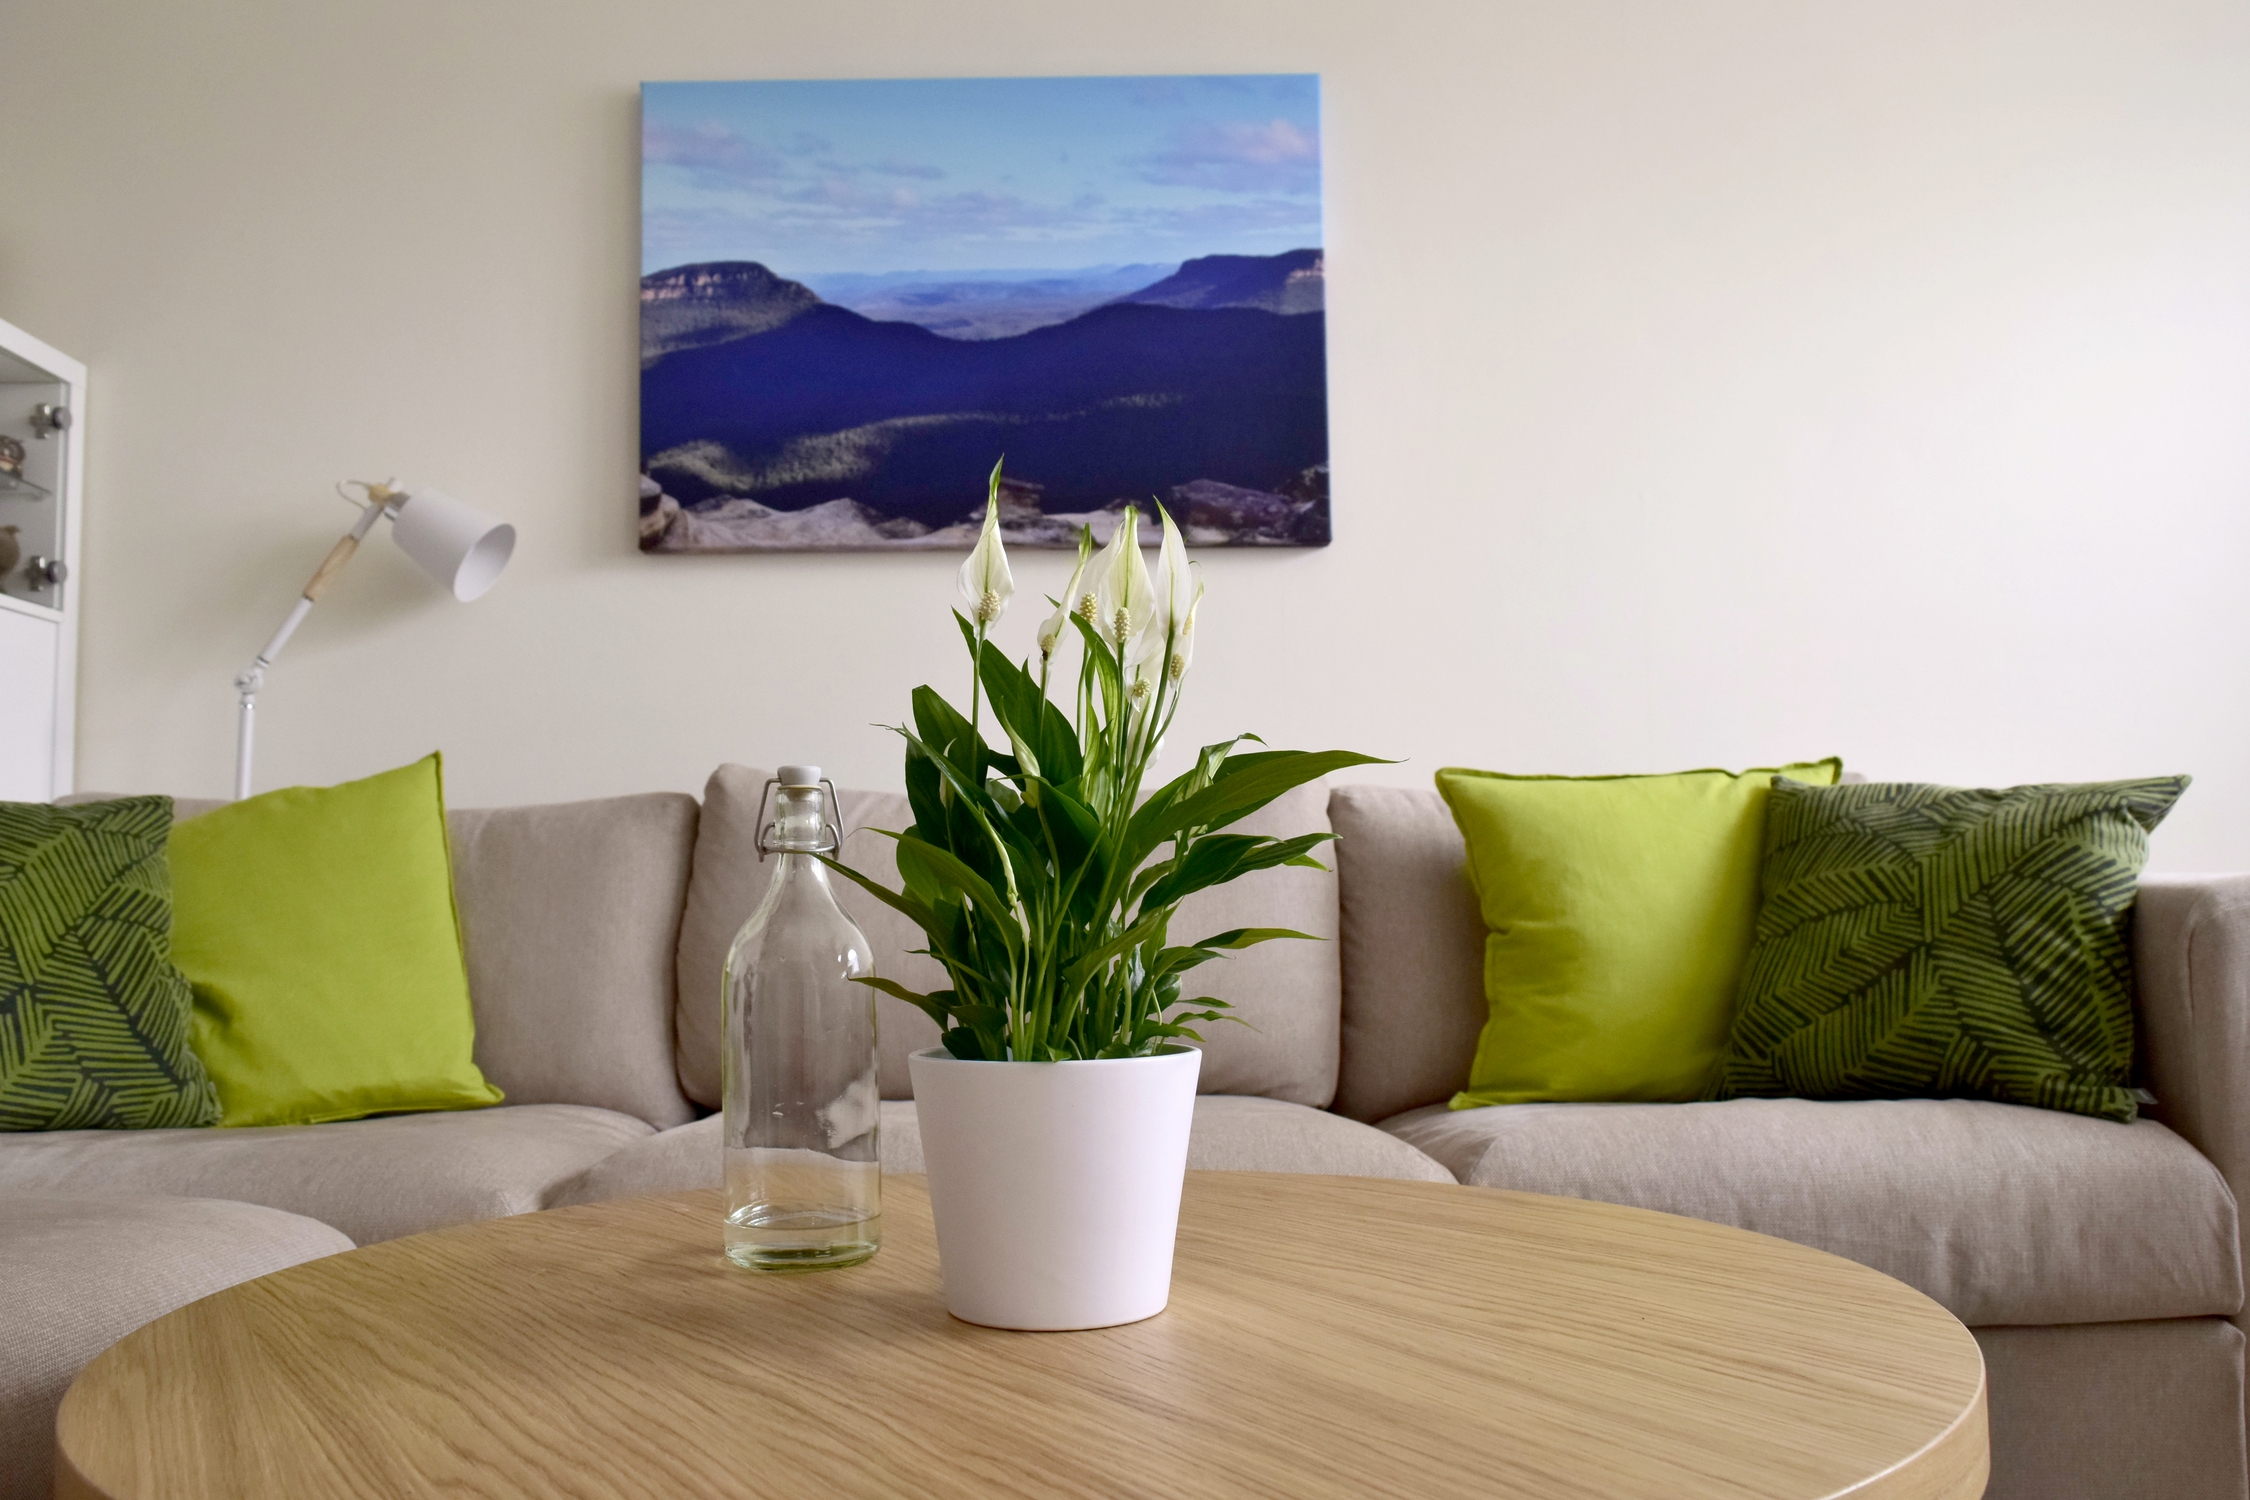 Immer eine gute Idee #wohnzimmer#couch#skandistyle#kunst#blumen